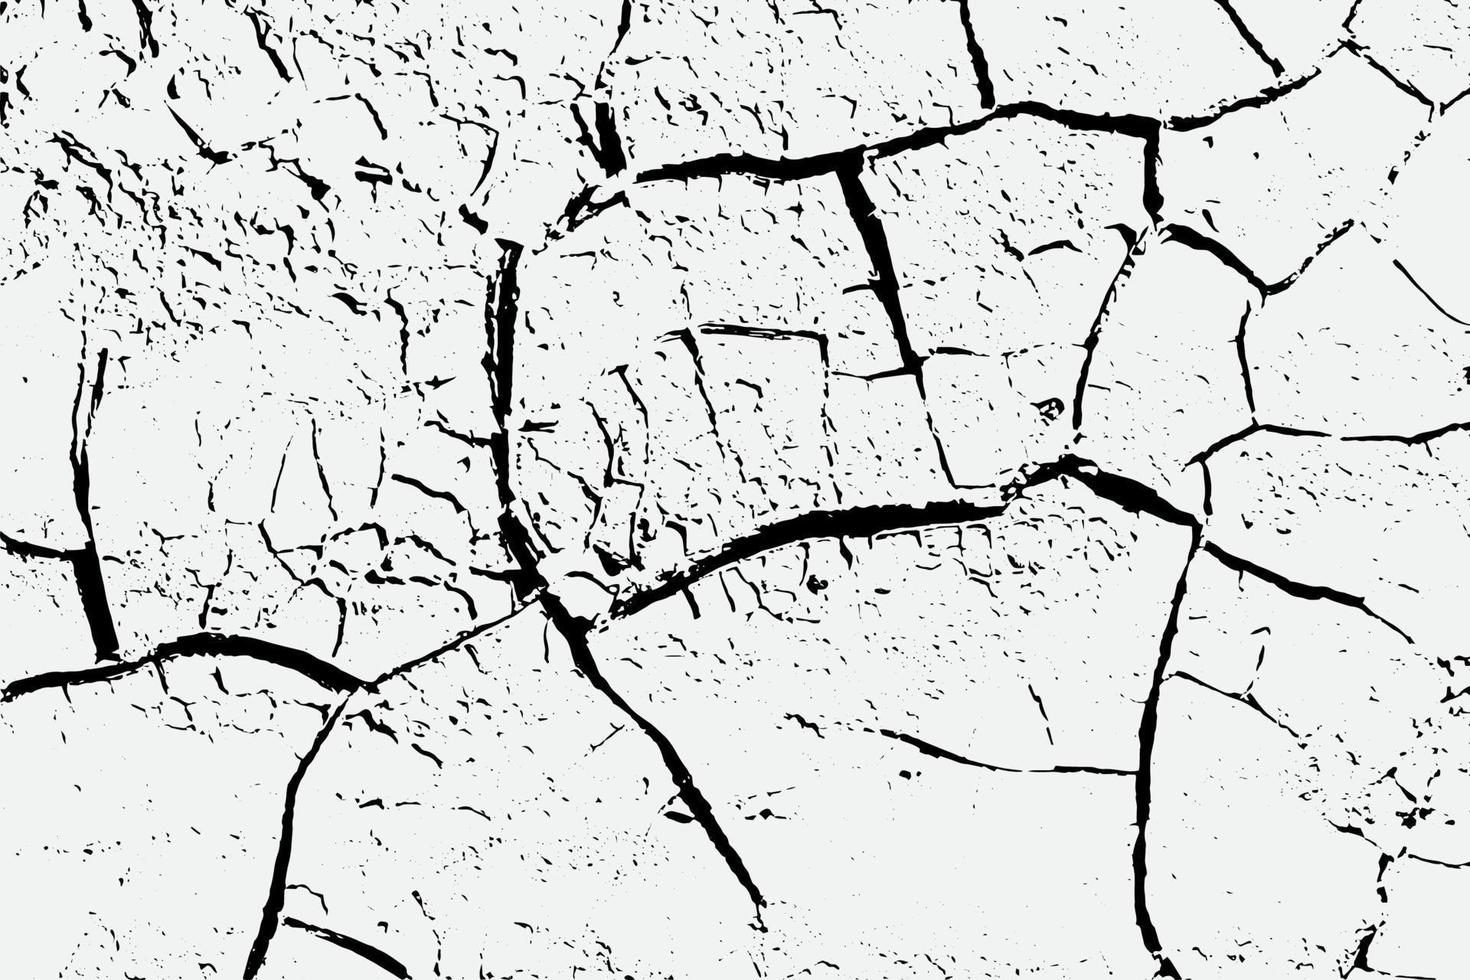 textura de grietas de tierra árida y salpicaduras de manchas, fondo de textura en blanco y negro vector eps